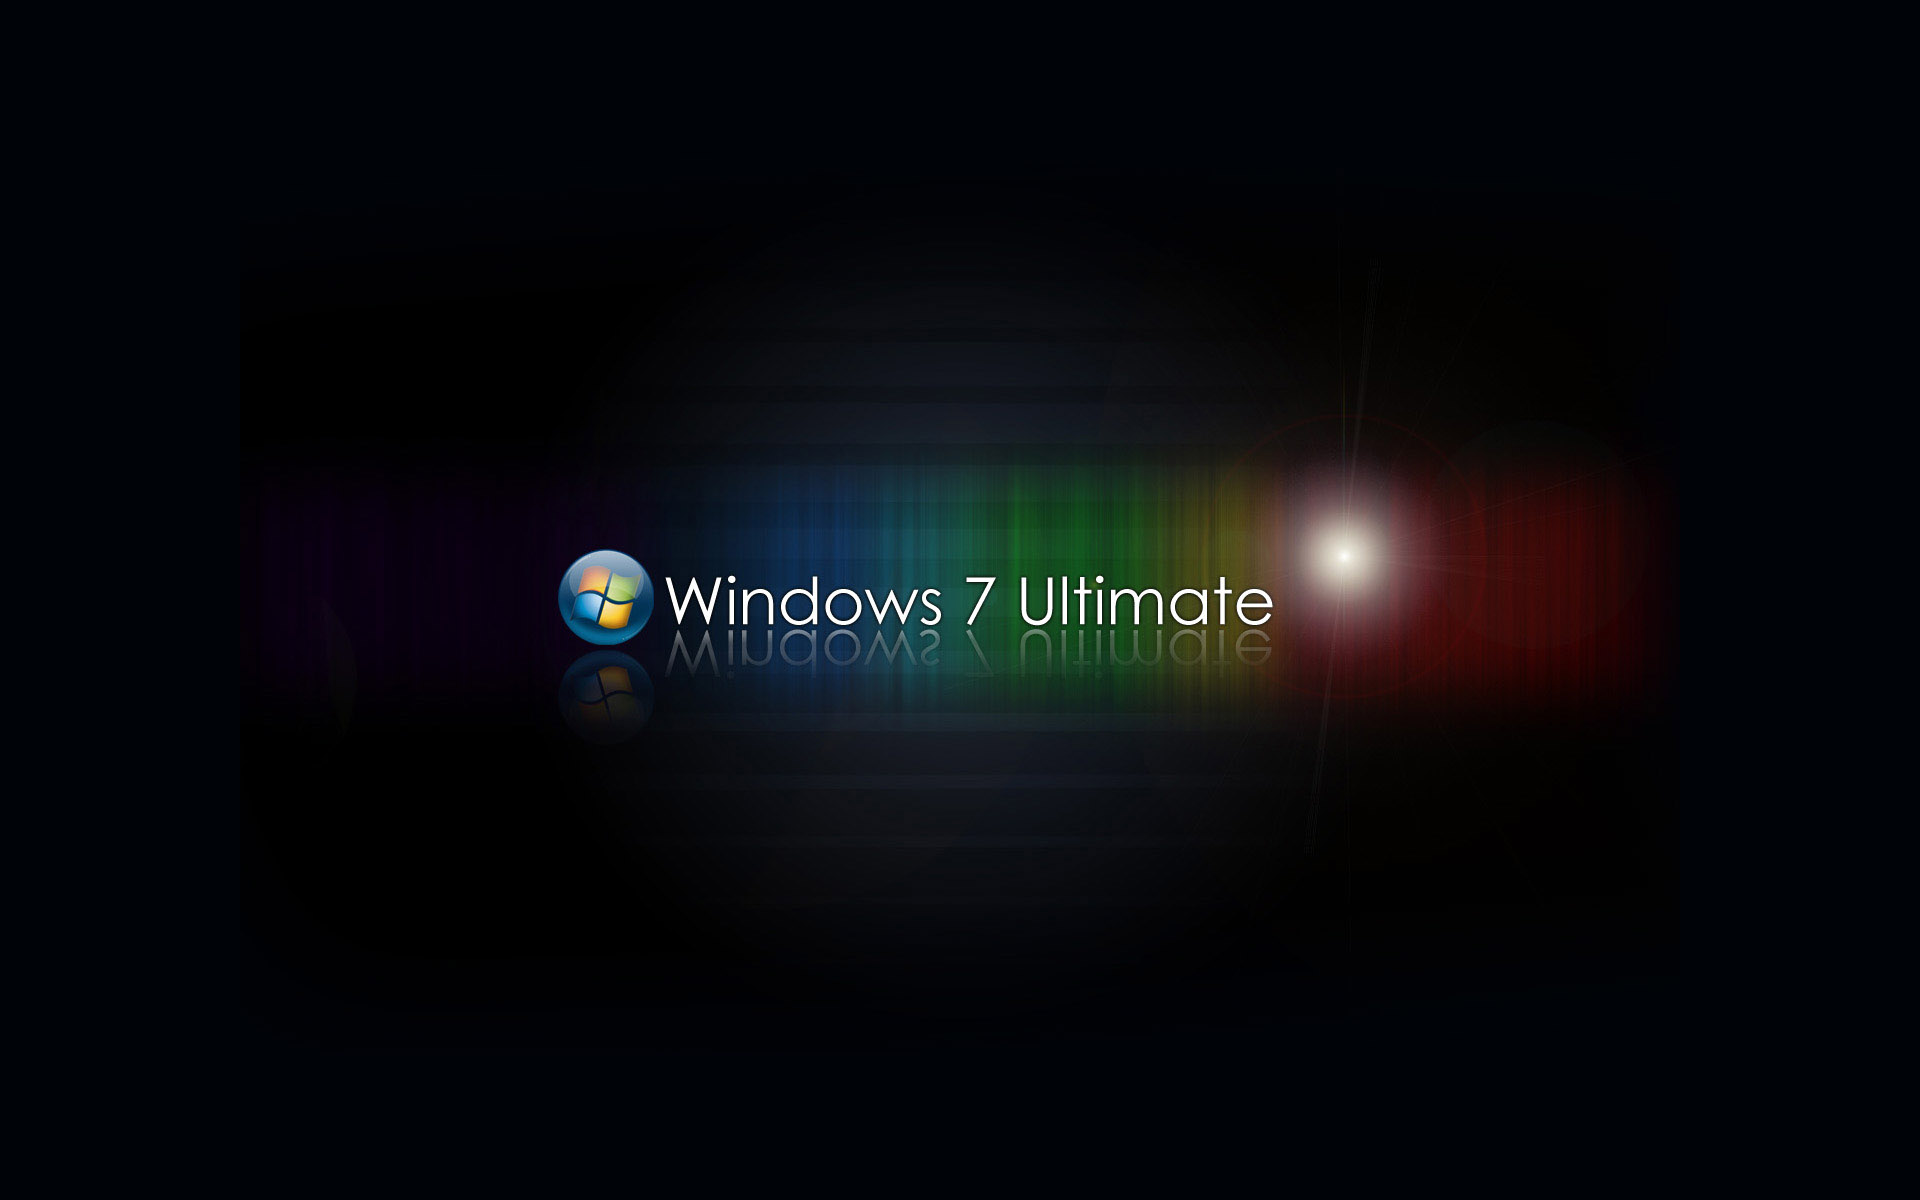 Скачать обои Windows 7 Ultimate на телефон бесплатно